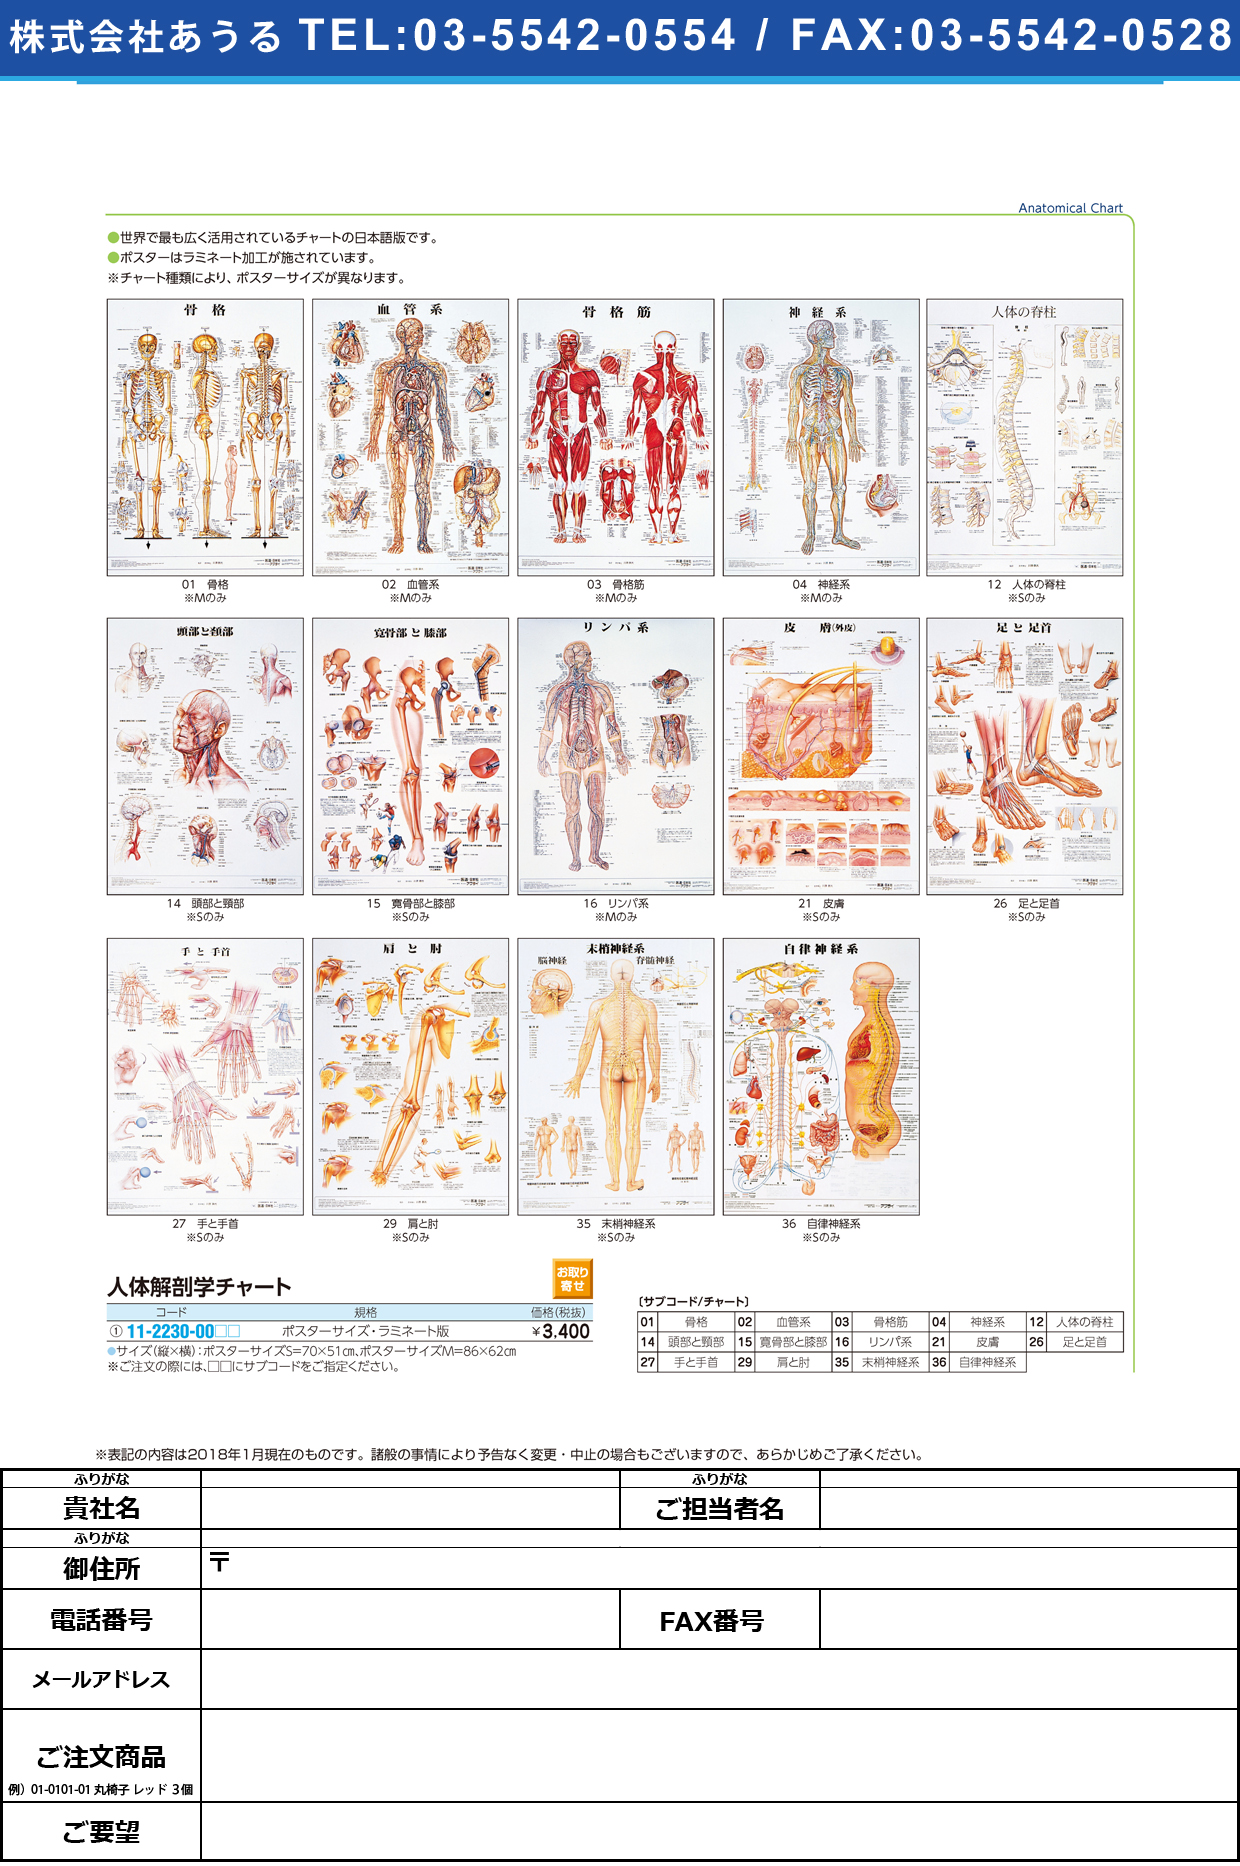 (11-2230-00)人体解剖学チャート（ポスターサイズ） ﾗﾐﾈｰﾄﾊﾞﾝ ｼﾞﾝﾀｲｶｲﾎﾞｳｶﾞｸﾁｬｰﾄ リンパ系Ｍ(京都科学)【1枚単位】【2019年カタログ商品】